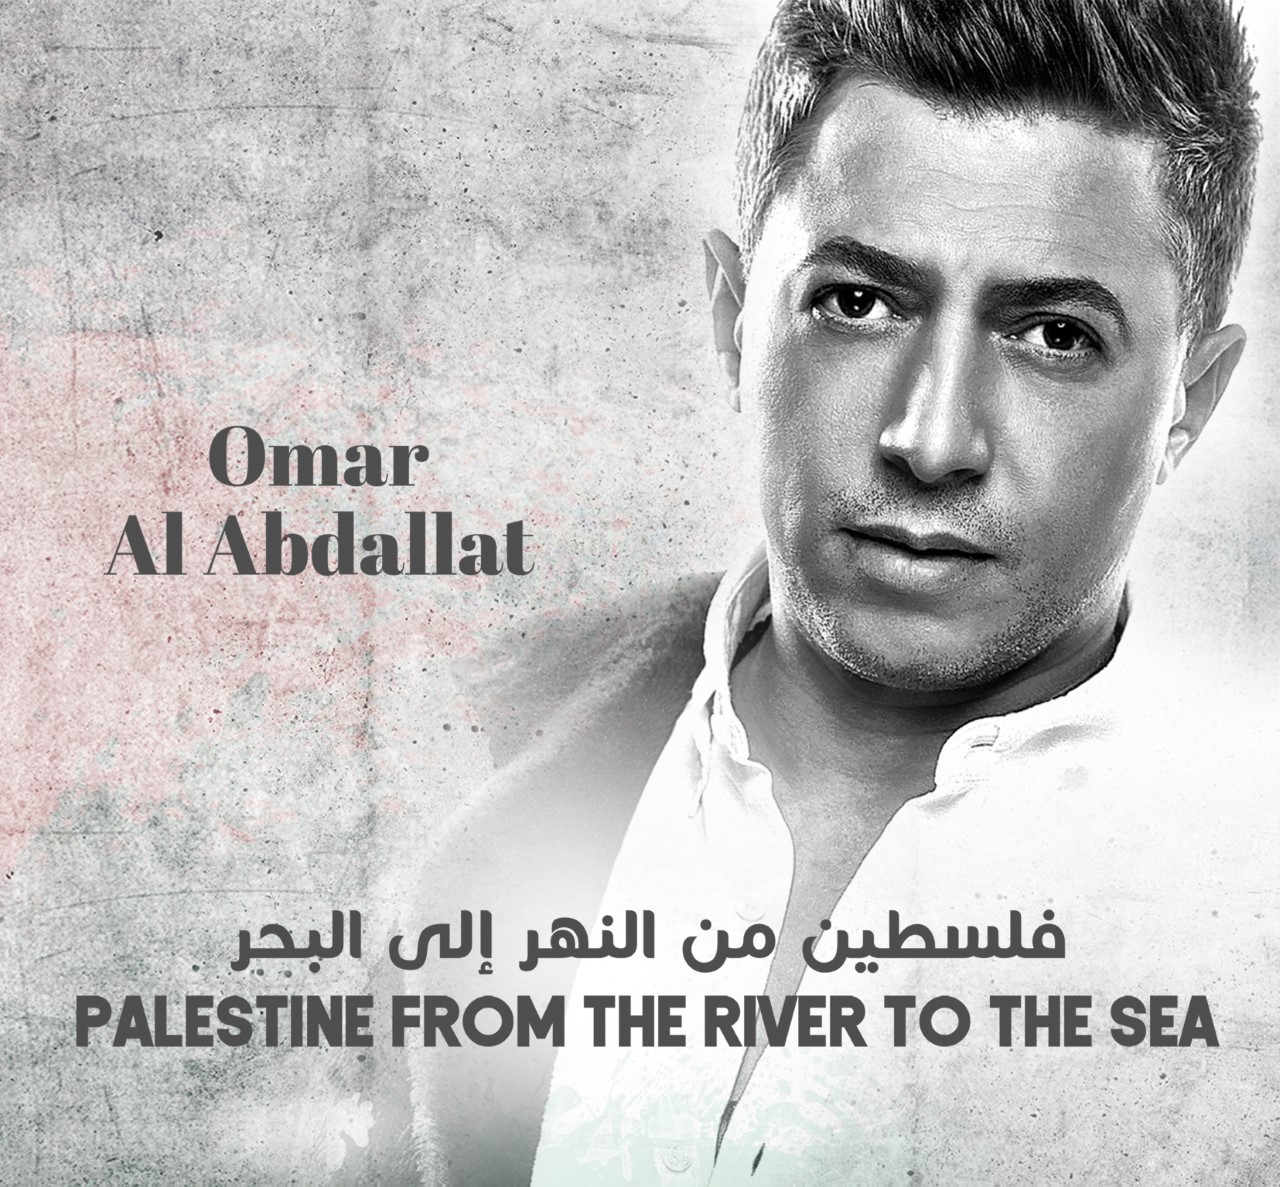 فنان أردني يطلق ألبوما كاملا بأسماء مدن فلسطين